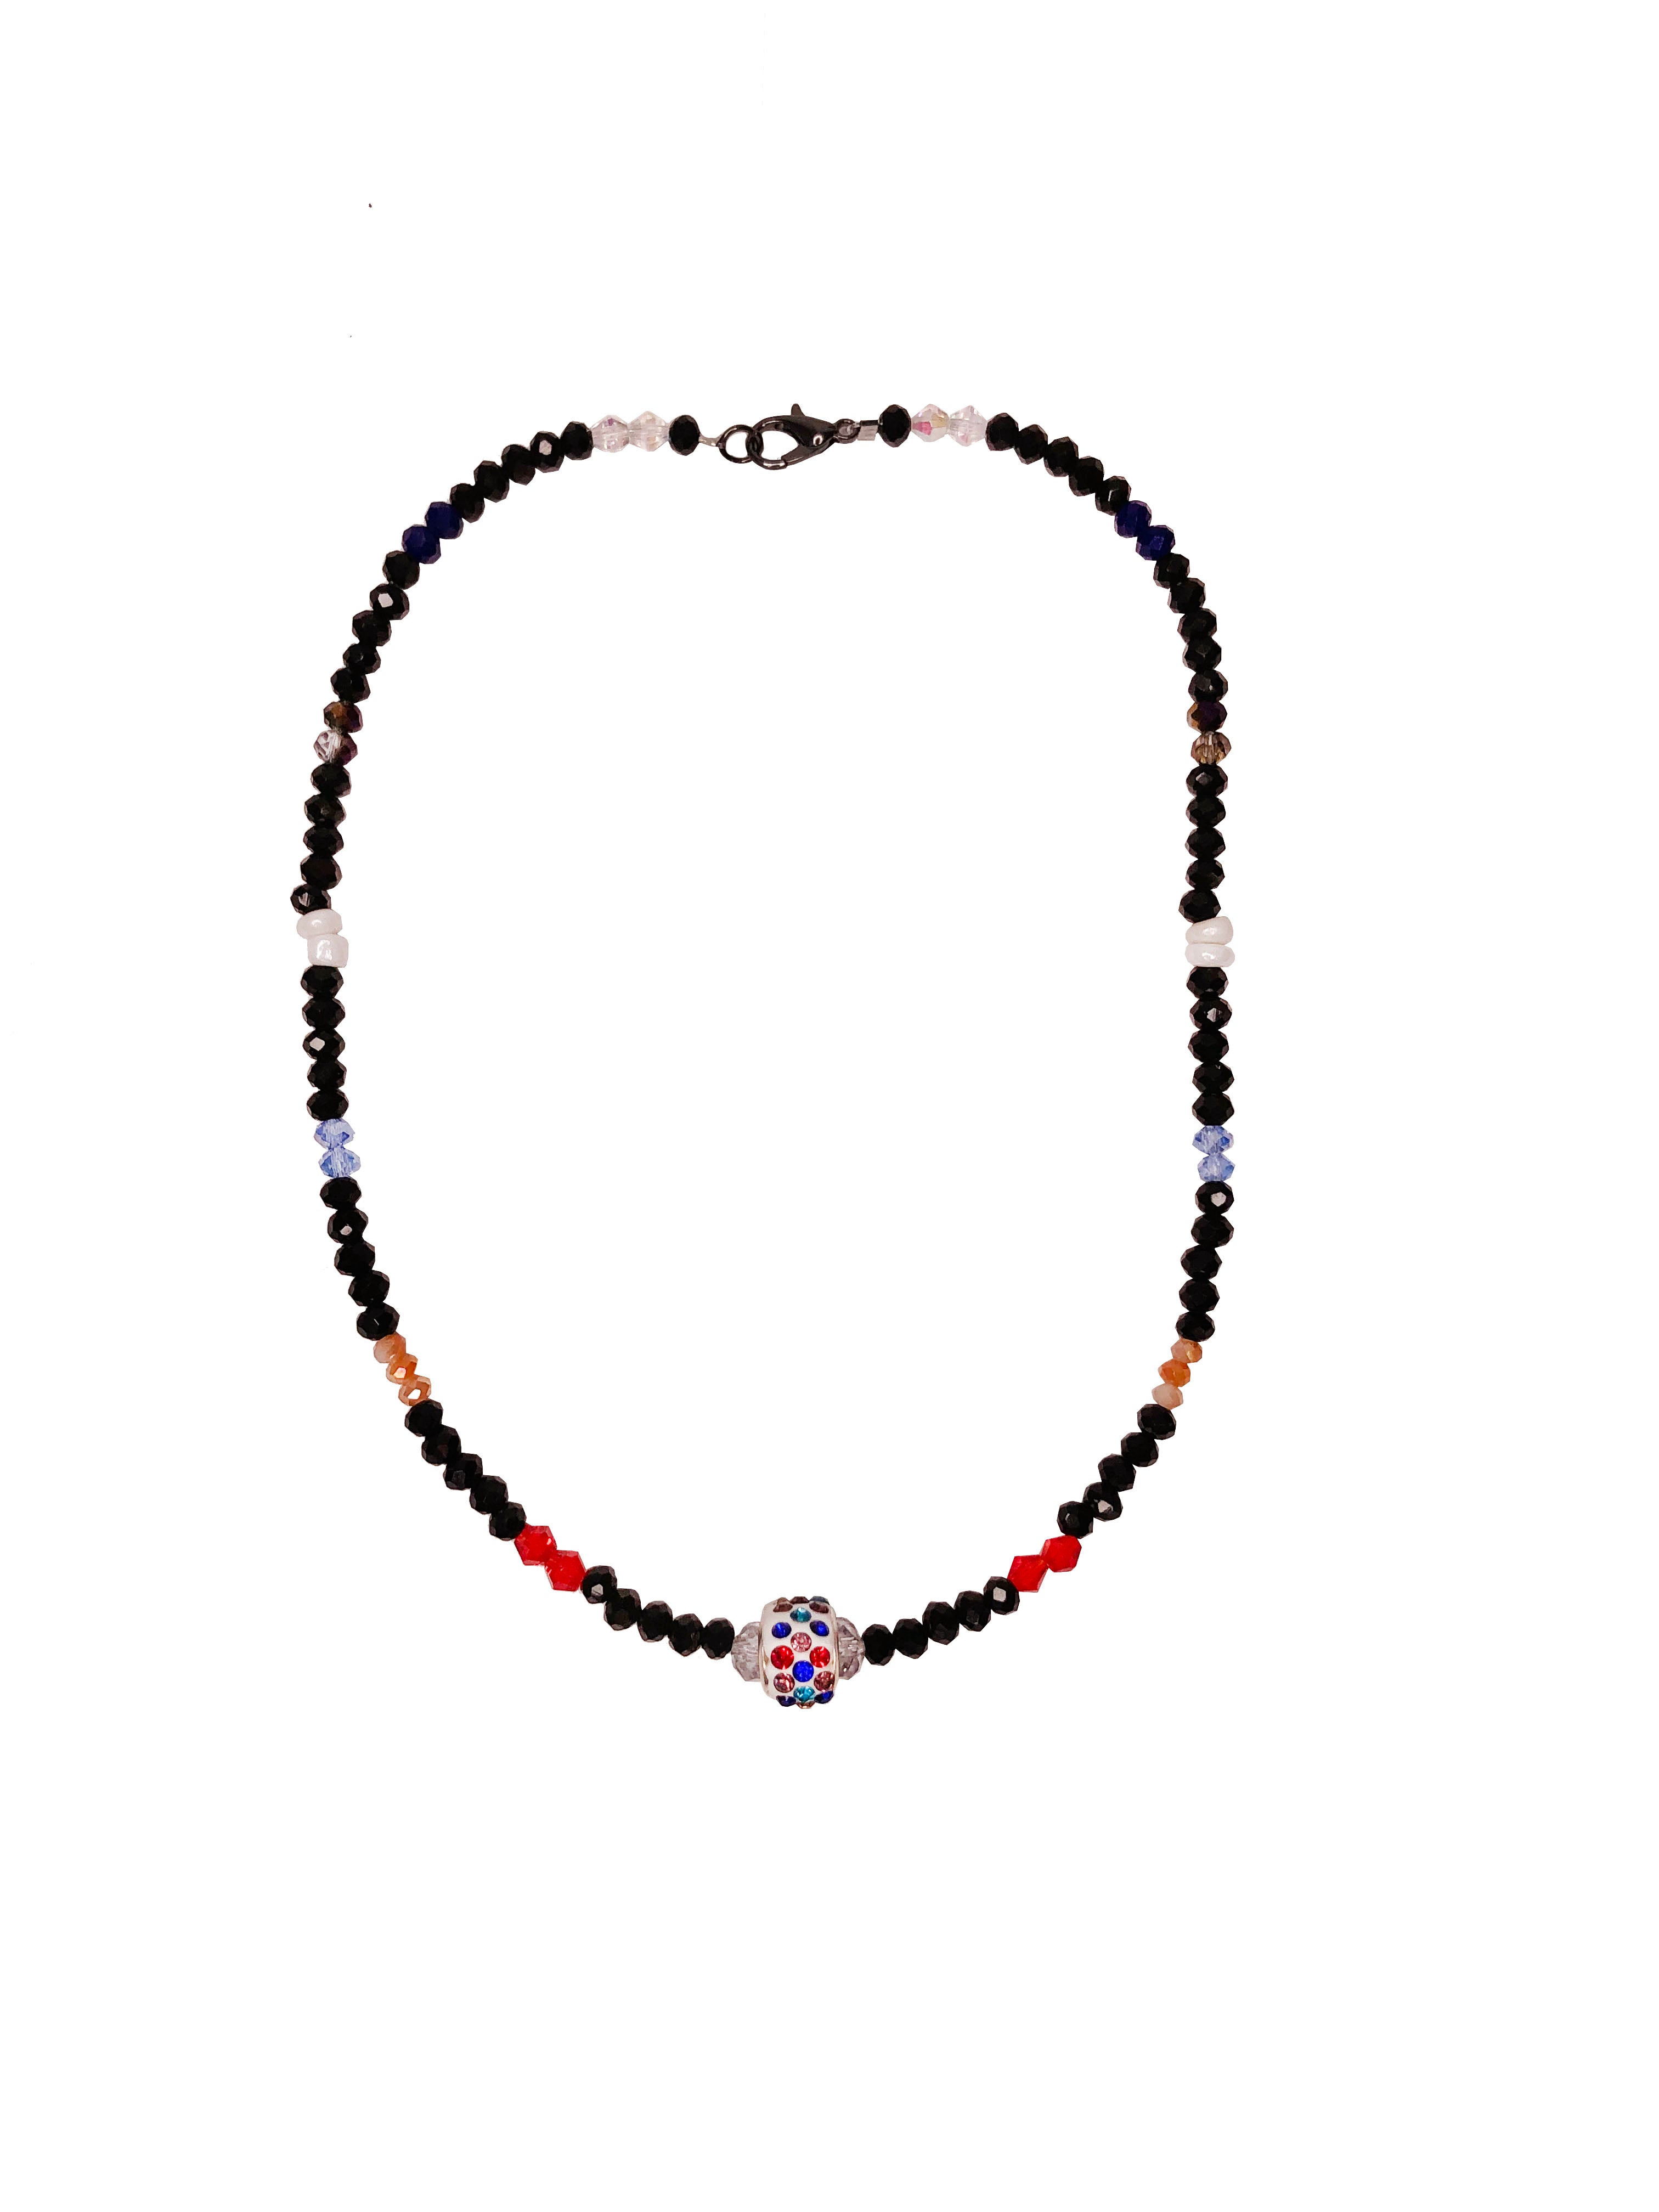 Rhinestone Necklace Earring Set | Rhinestone Jewelry Set Women | Rainbow  Jewelry Sets - Jewelry Sets - Aliexpress